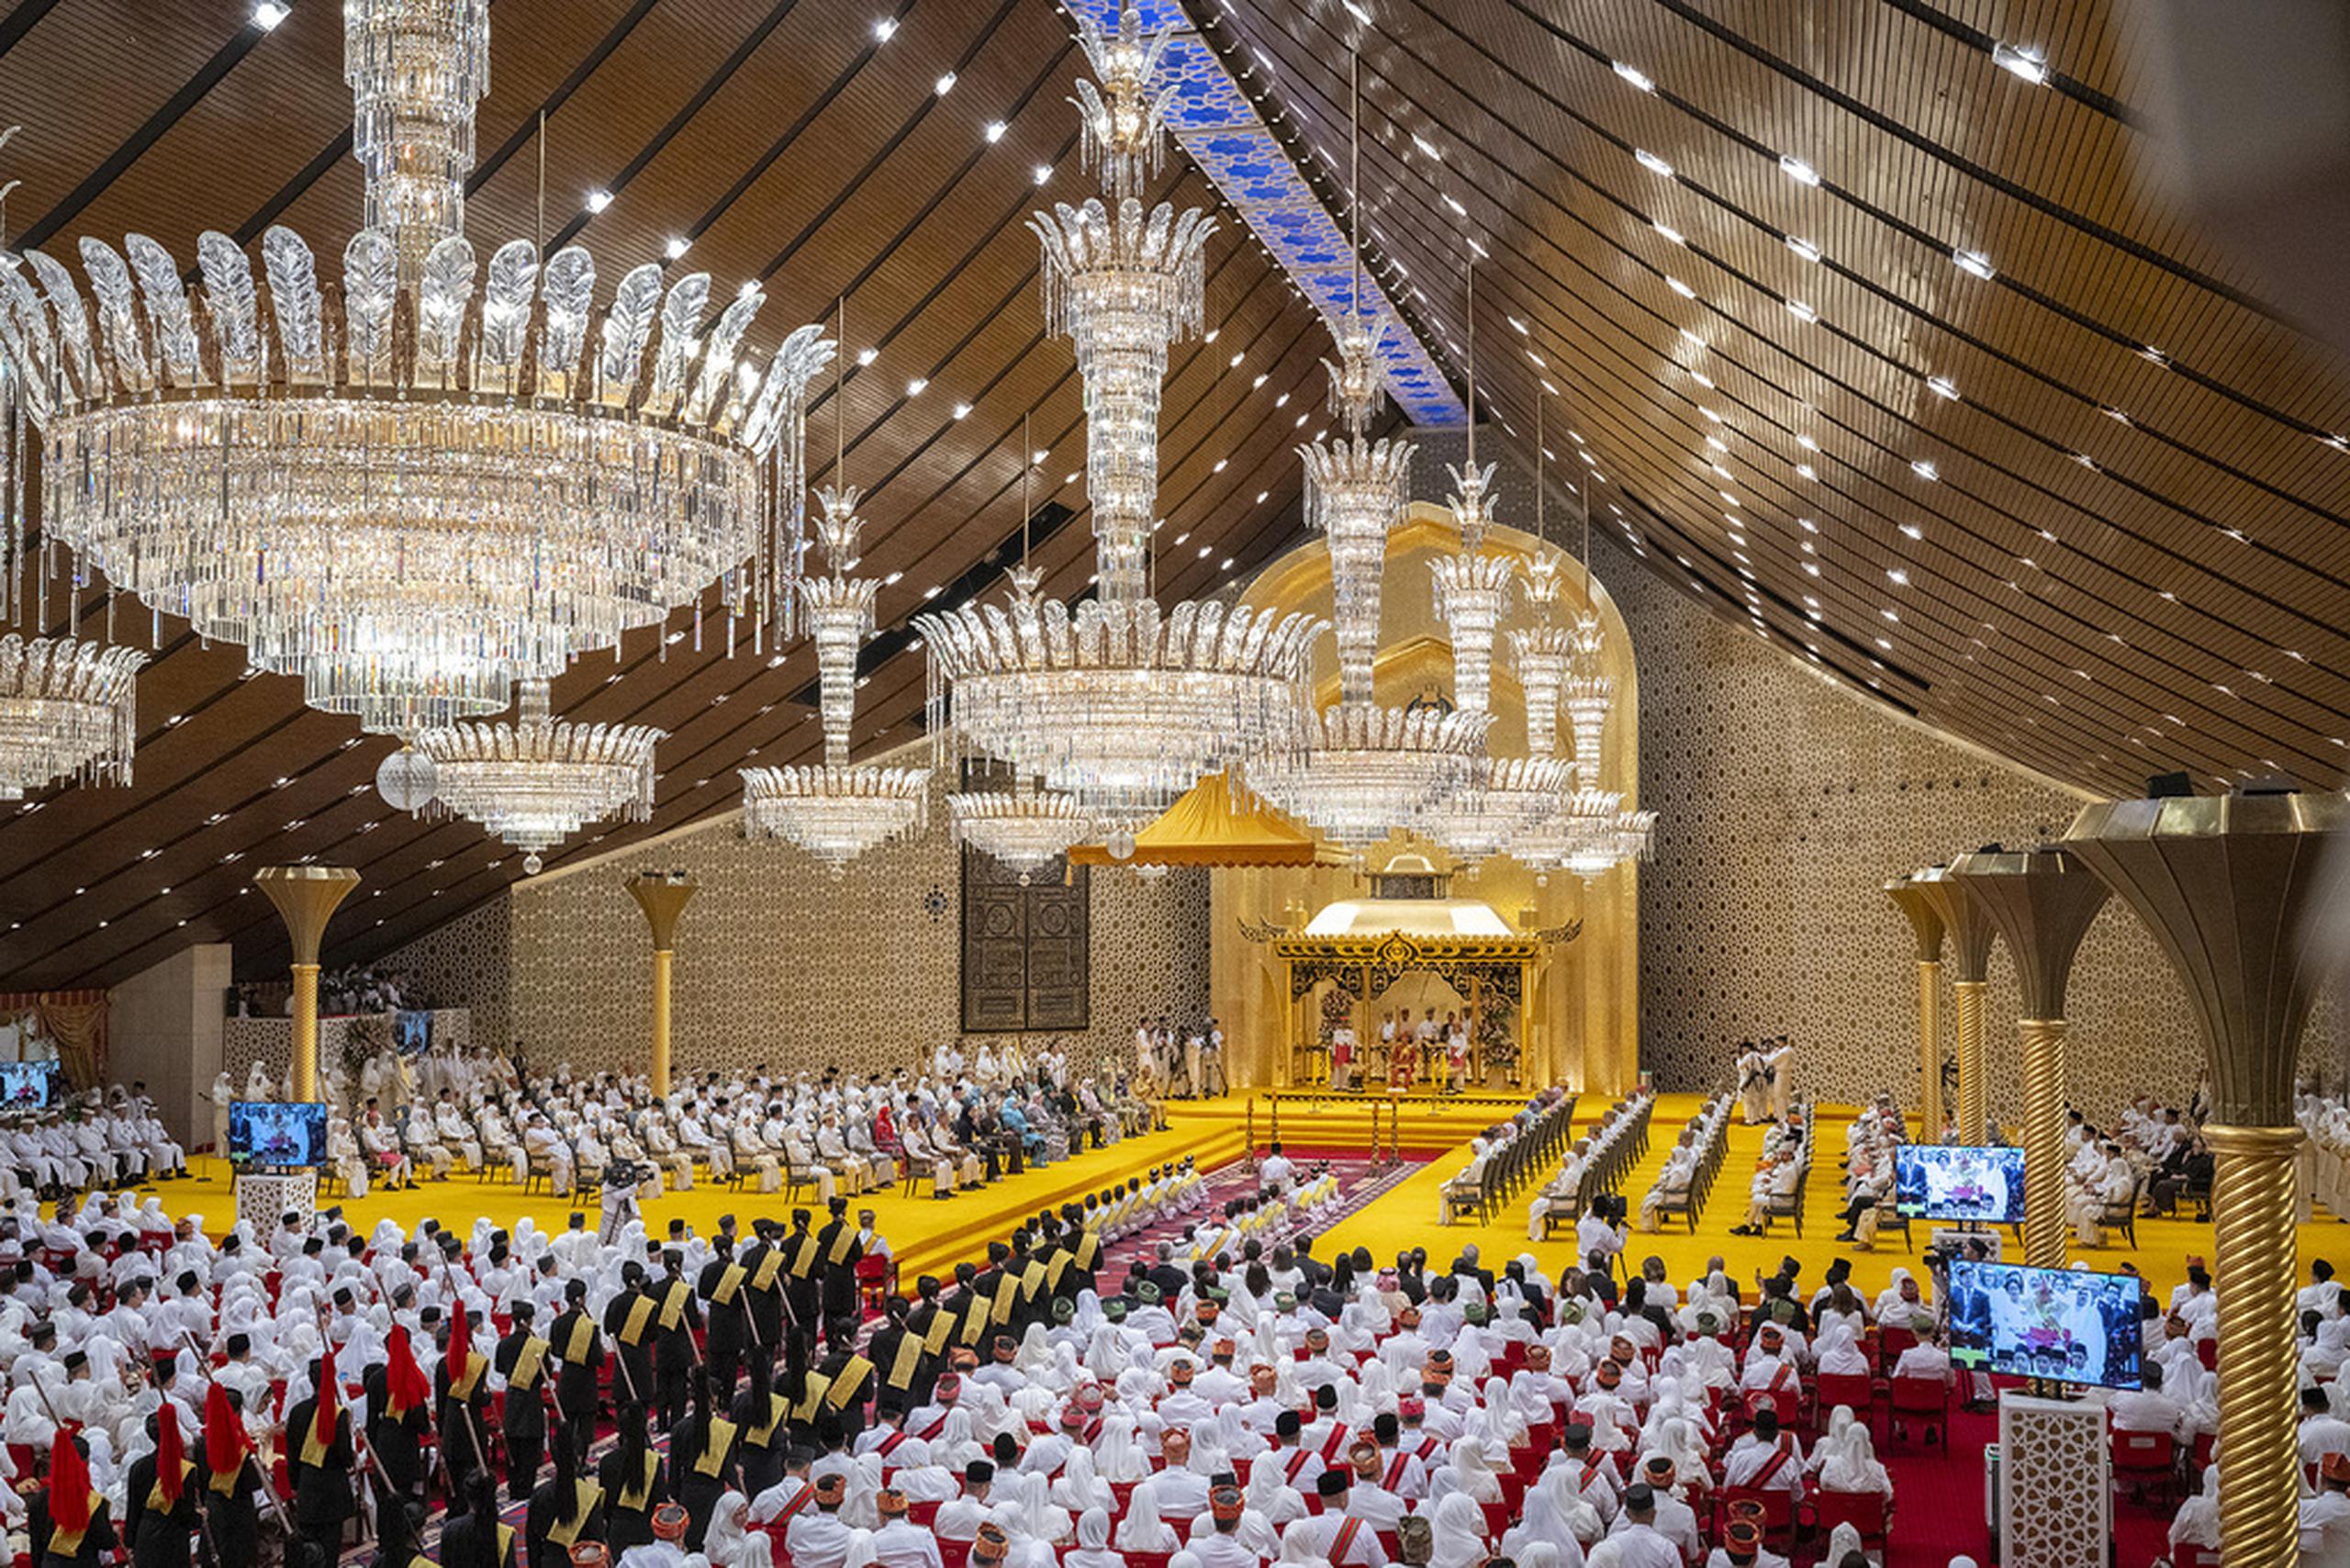 La ceremonia incluyó el recital de textos religiosos y abluciones de los asistentes, incluido el sultán Hassanal Bolkiah y otros miembros de la realeza, en el imponente palacio Istana Nurul Iman del pequeño y rico sultanato, que cuenta con vastos yacimientos de petróleo y gas.